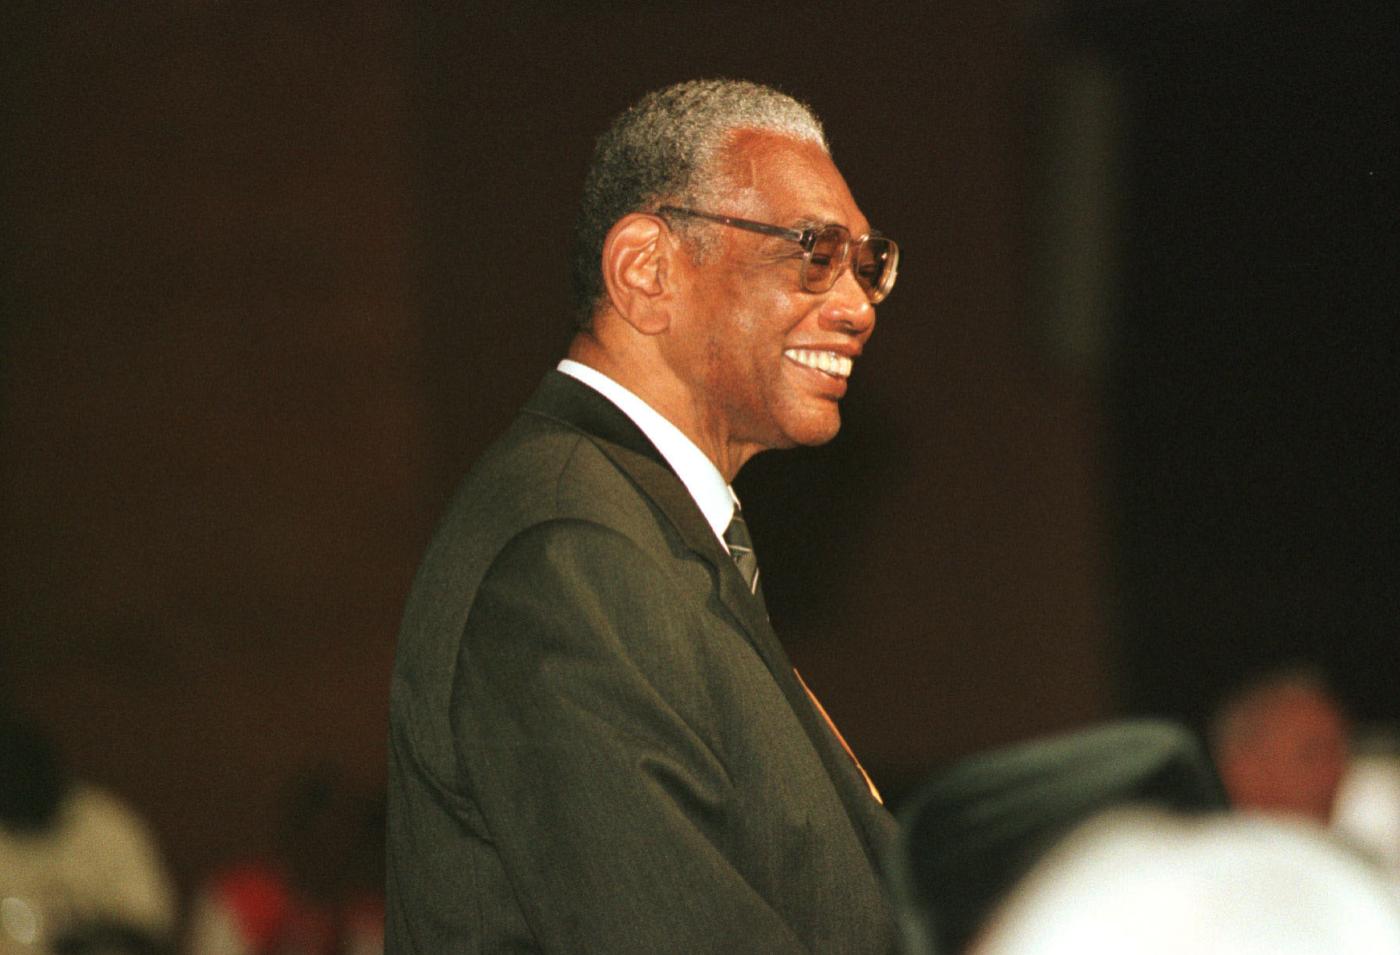 Philip Potter en la 8ª Asamblea del CMI en Harare (Zimbabwe), diciembre de 1998. Fotografía: Chris Black/CMI